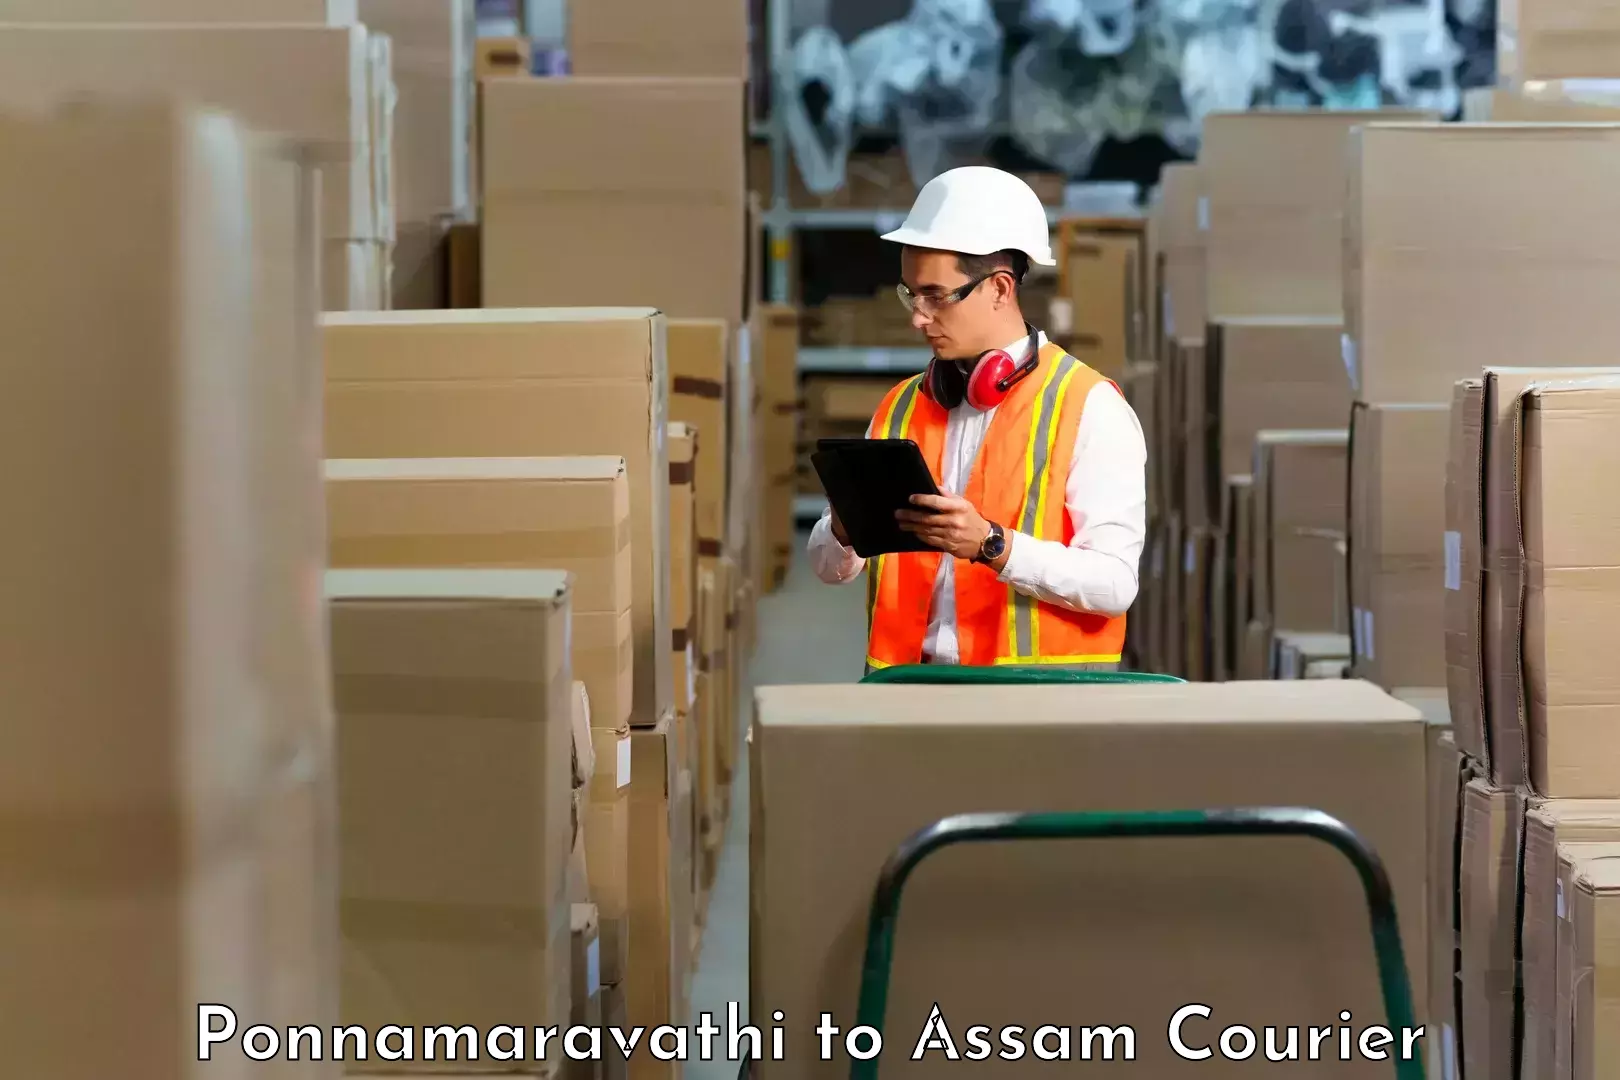 Subscription-based courier Ponnamaravathi to Lala Assam